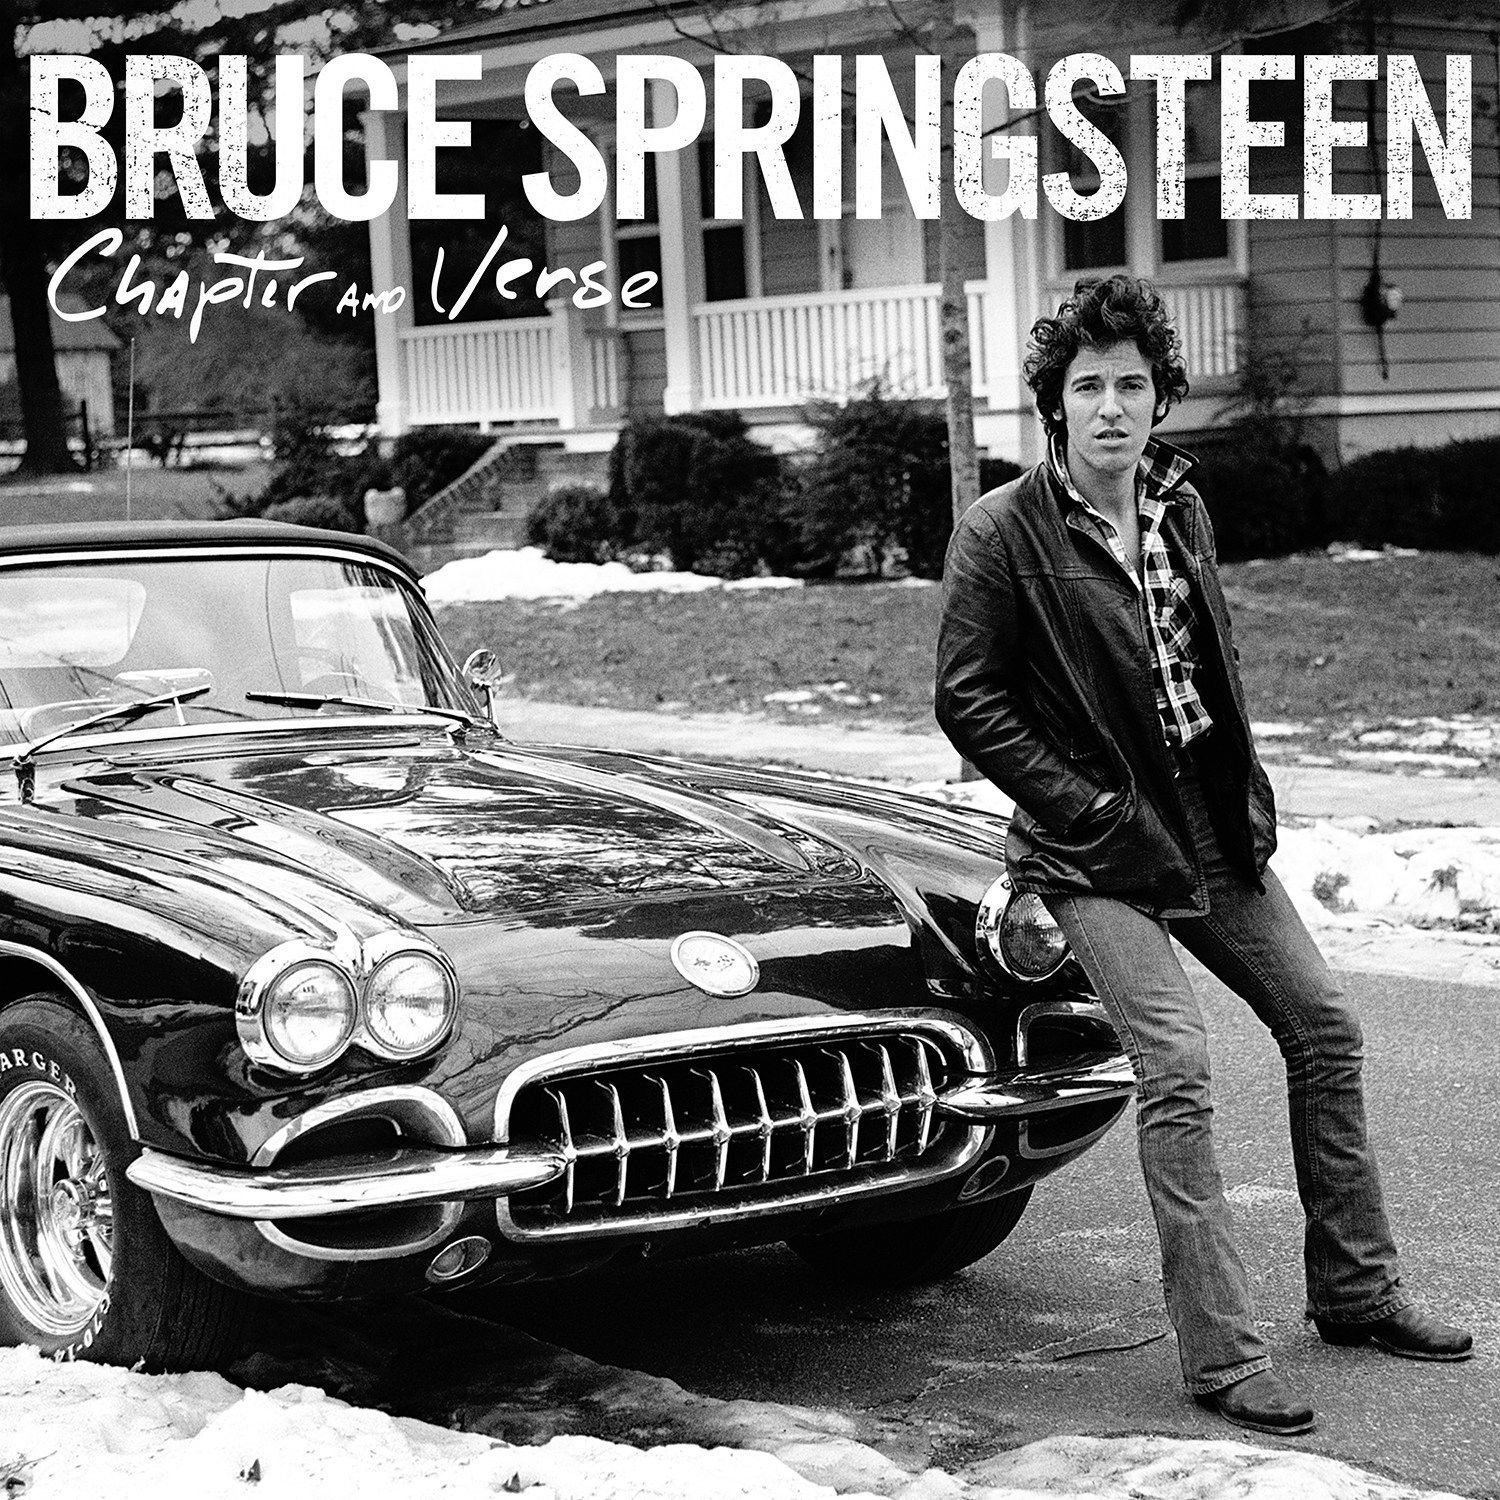 Imagem do álbum Chapter and Verse do(a) artista Bruce Springsteen